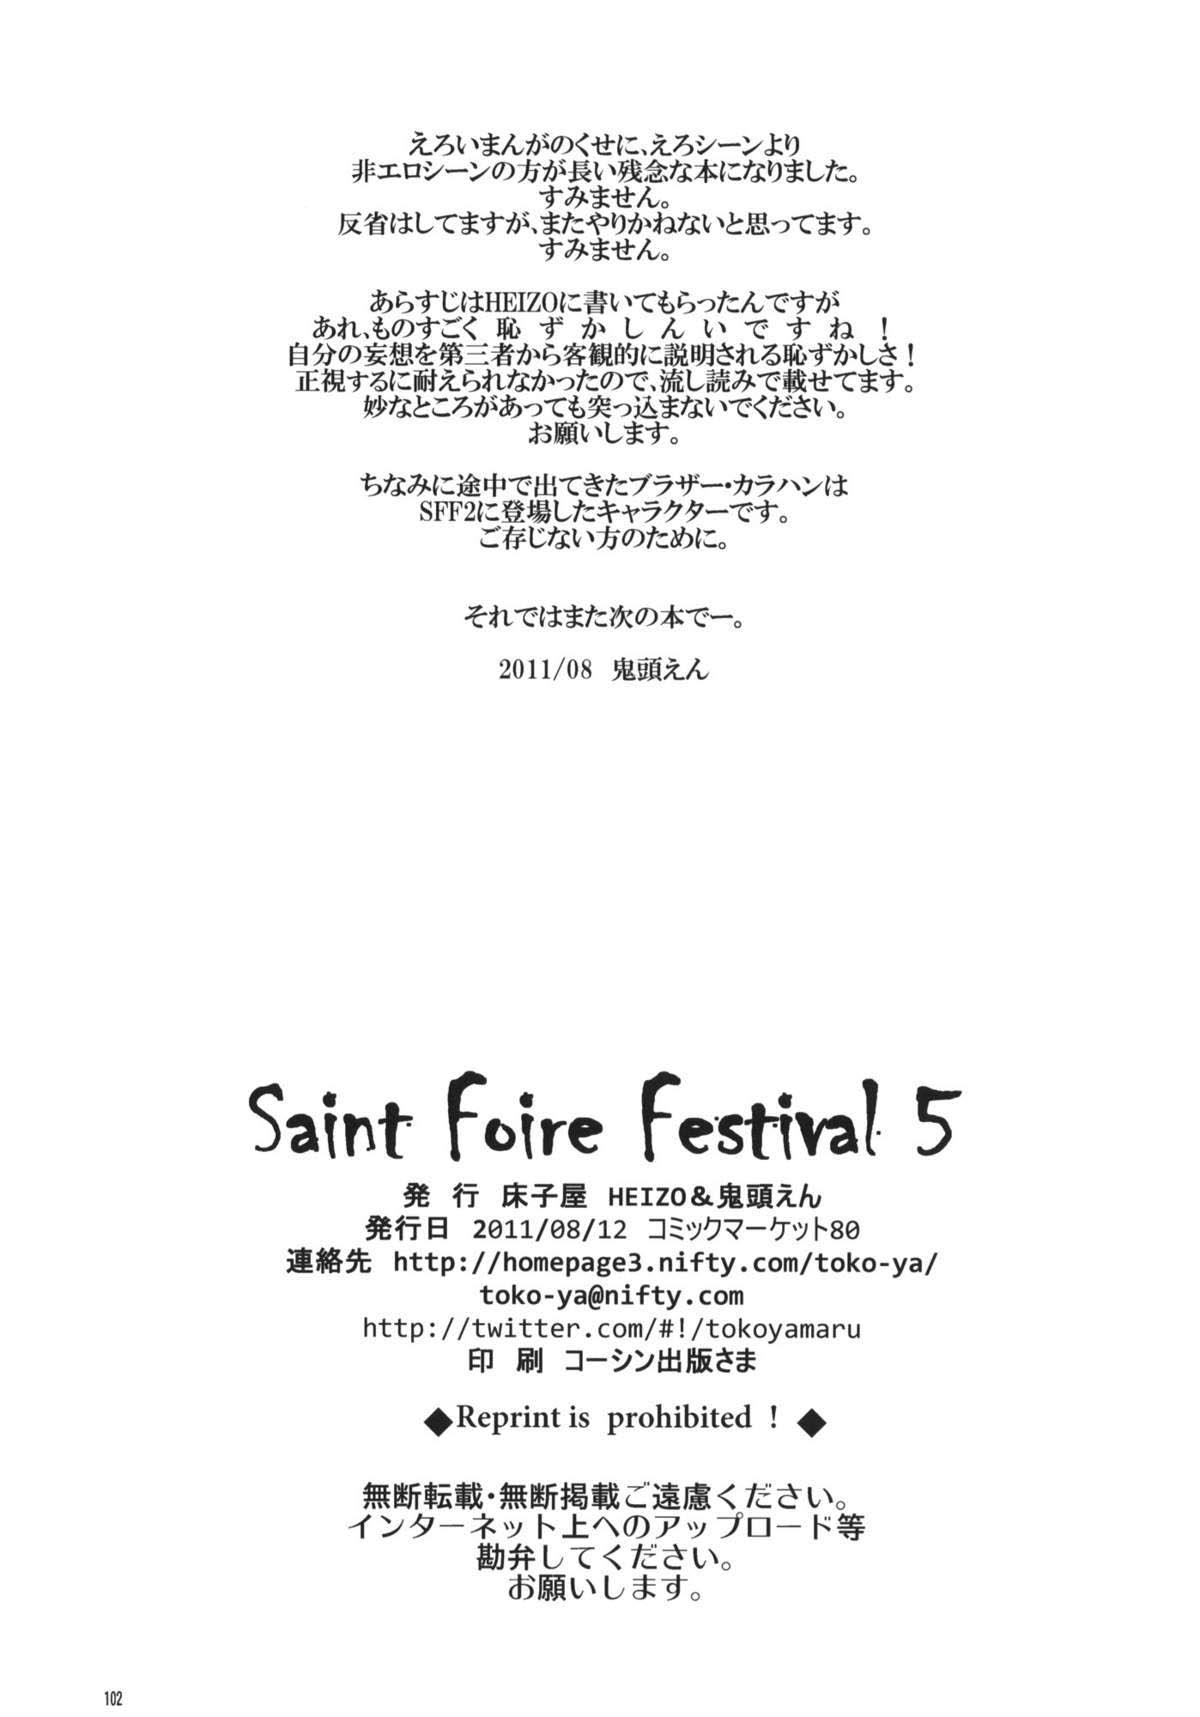 Saint Foire Festival 5 99